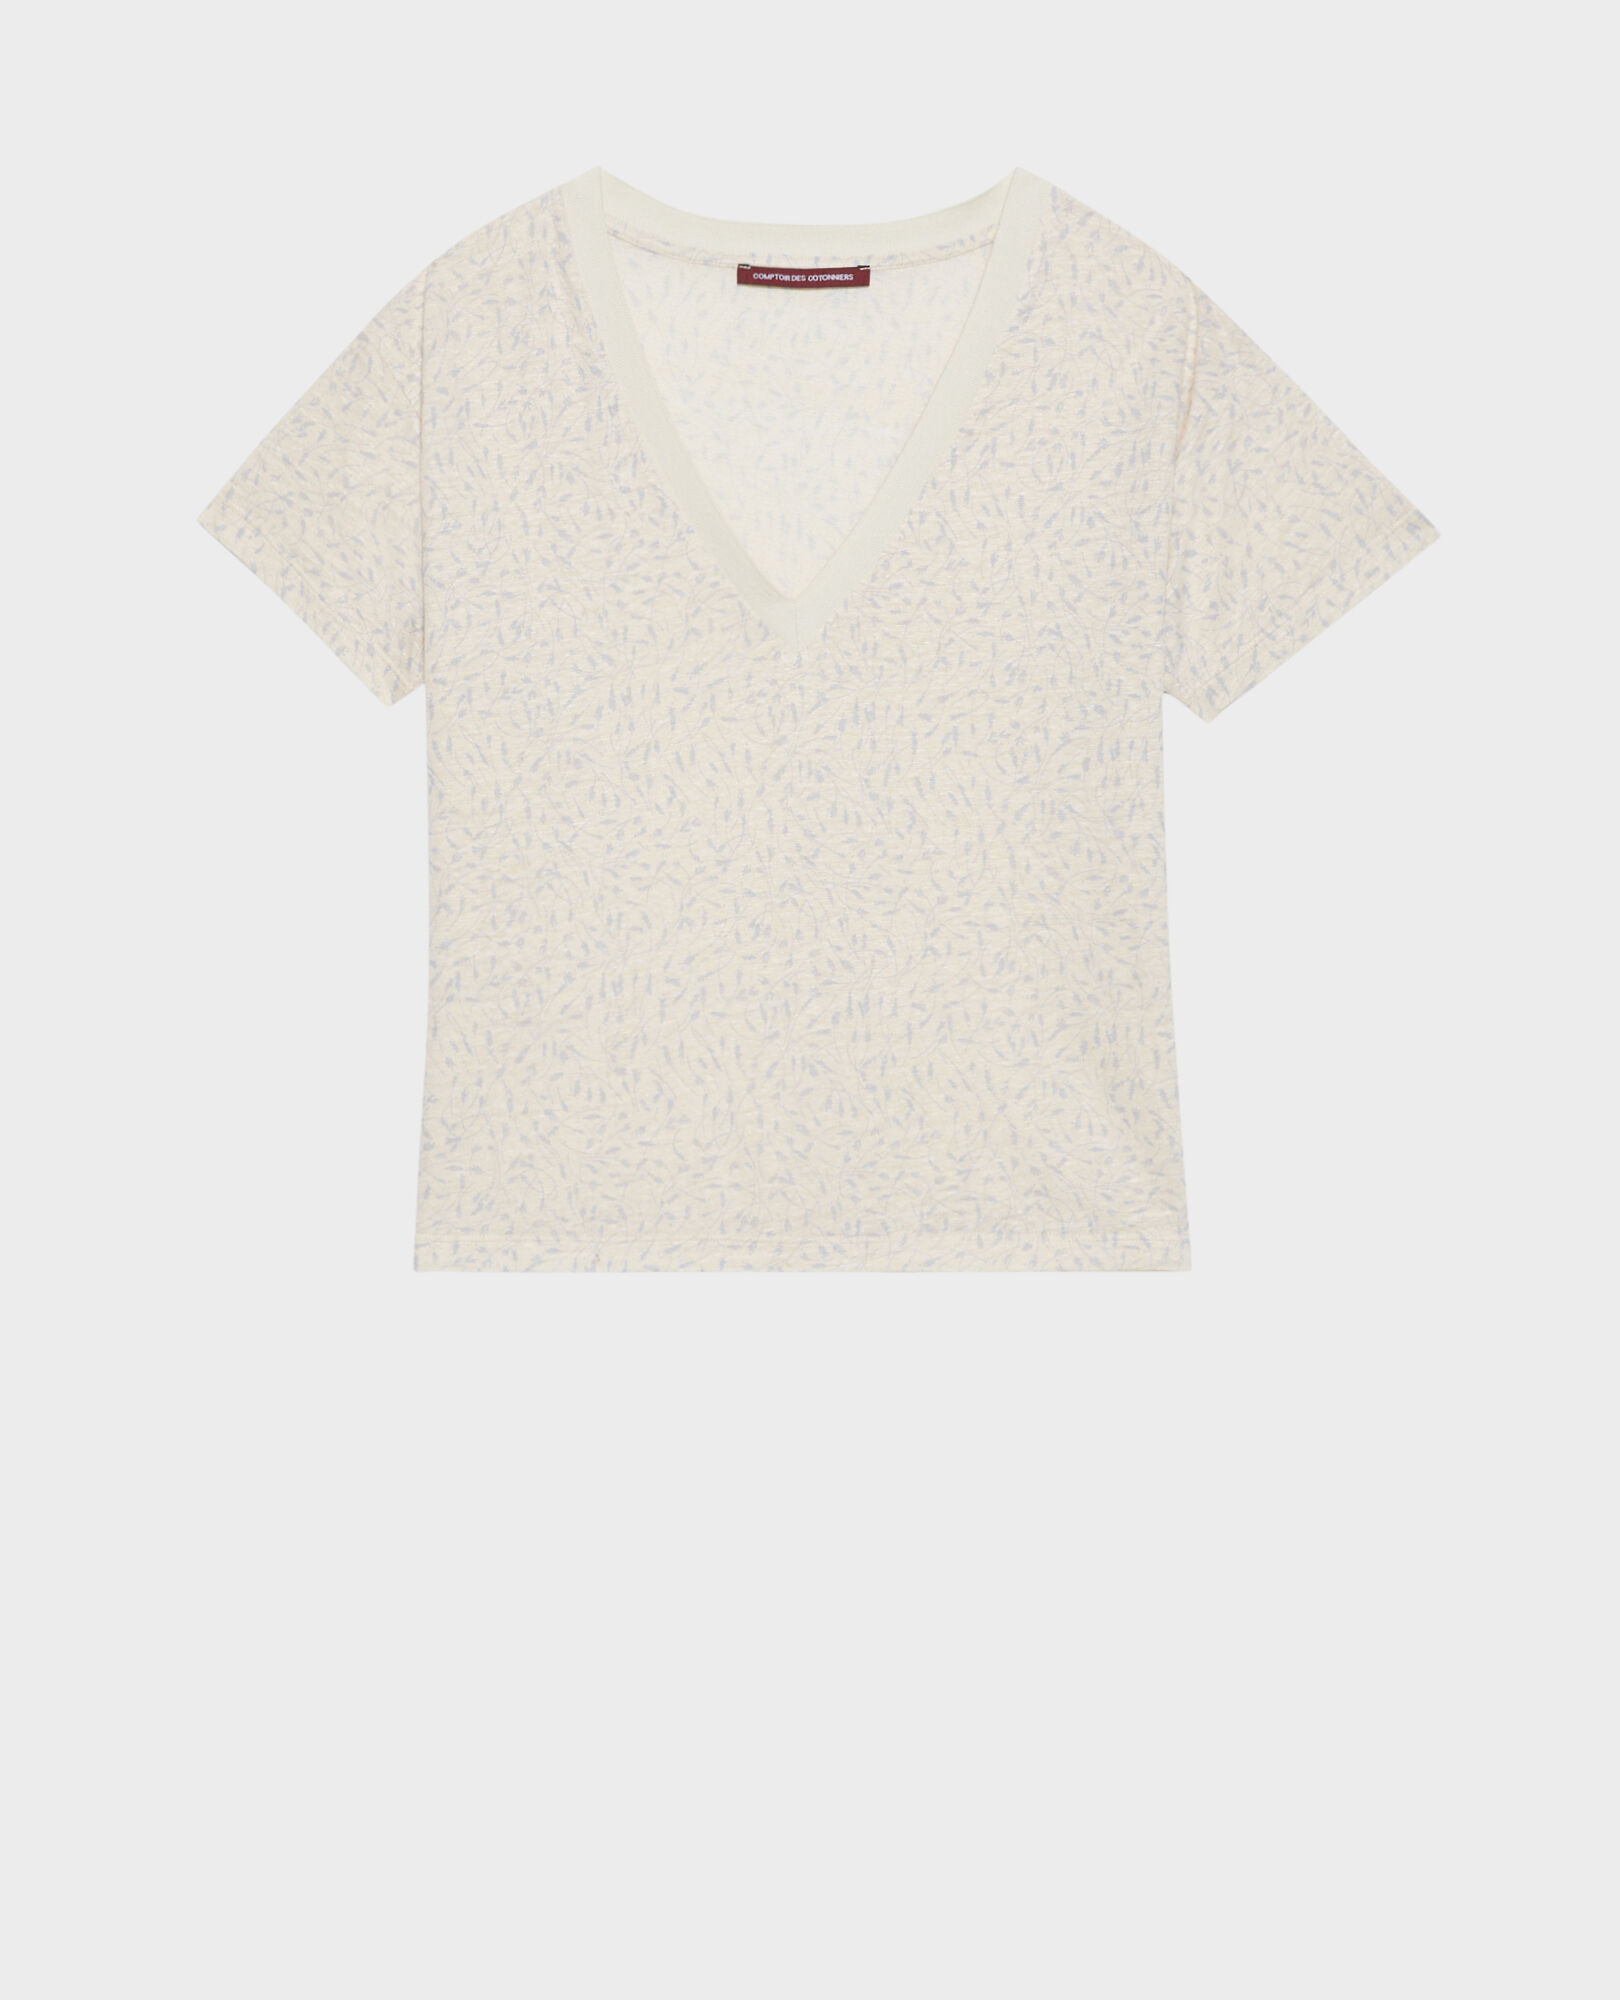 SARAH - Linen V-neck t-shirt 91 print white 2ste338f05